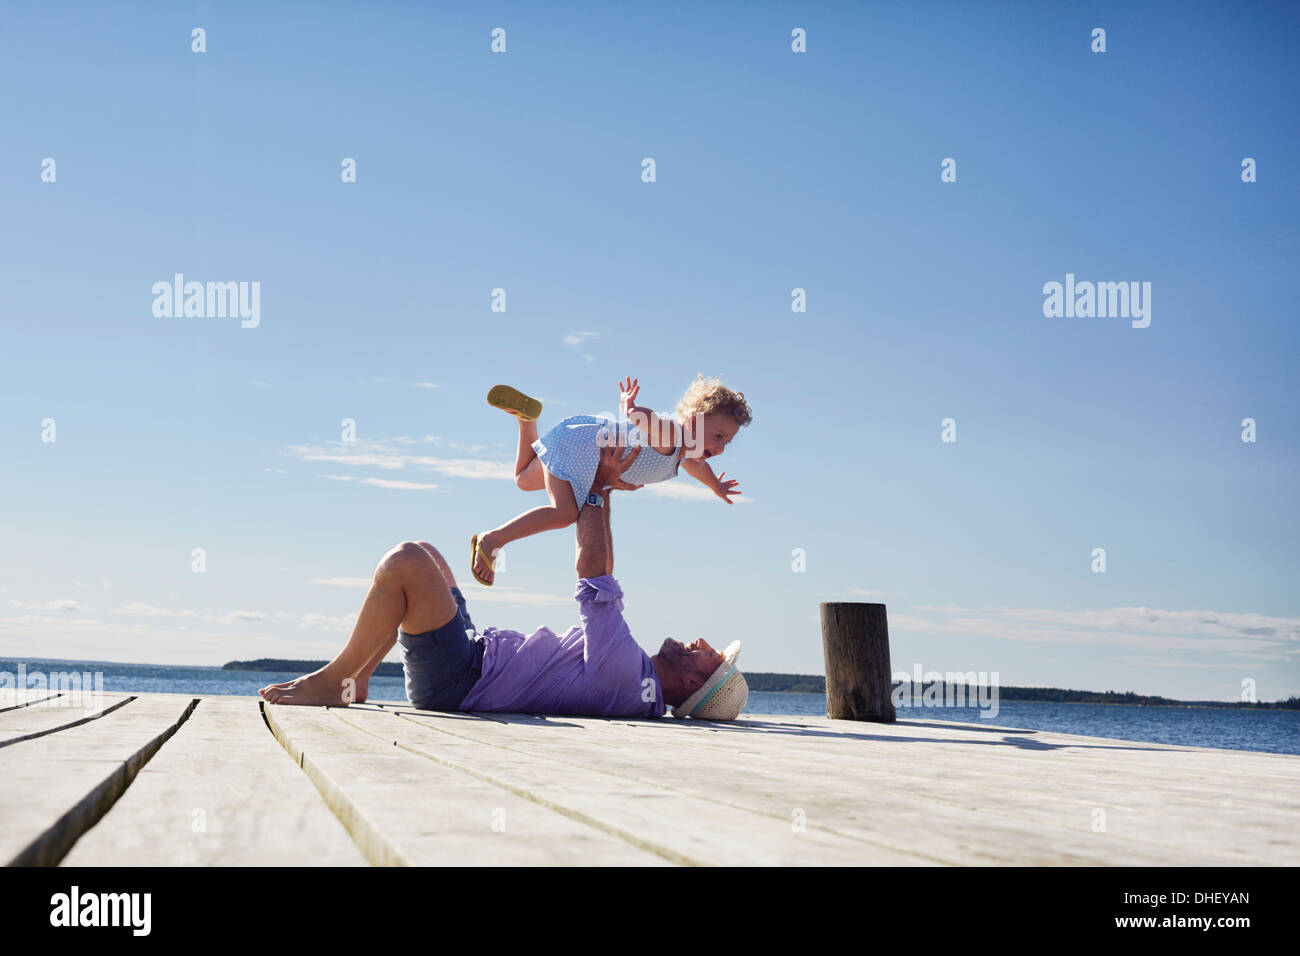 Female toddler et père de jouer, Utvalnas, Gavle, Suède Banque D'Images